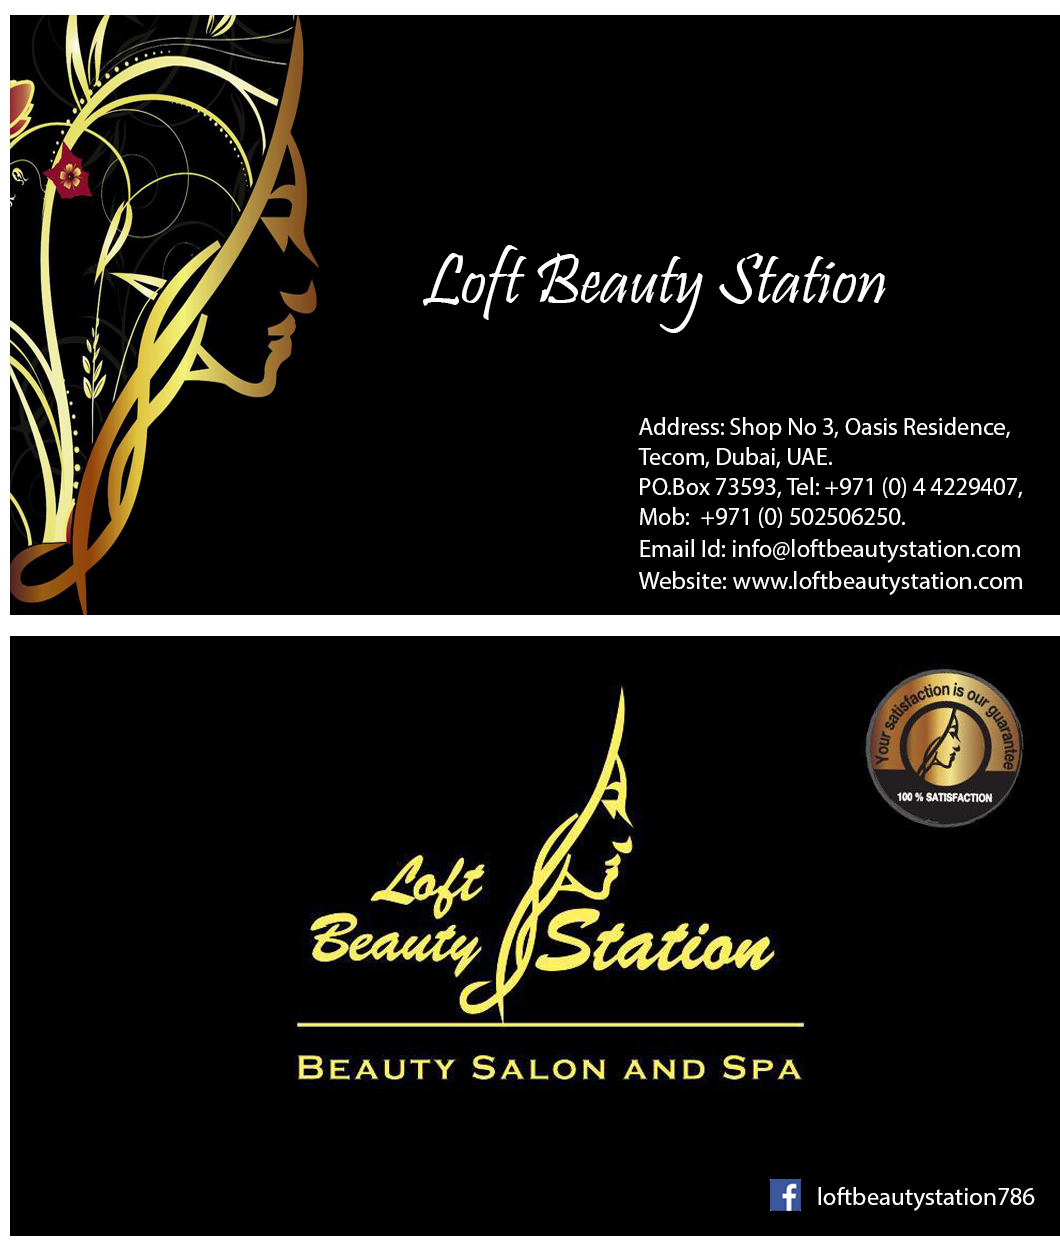 Loft Beauty Station : Loft Beauty Station